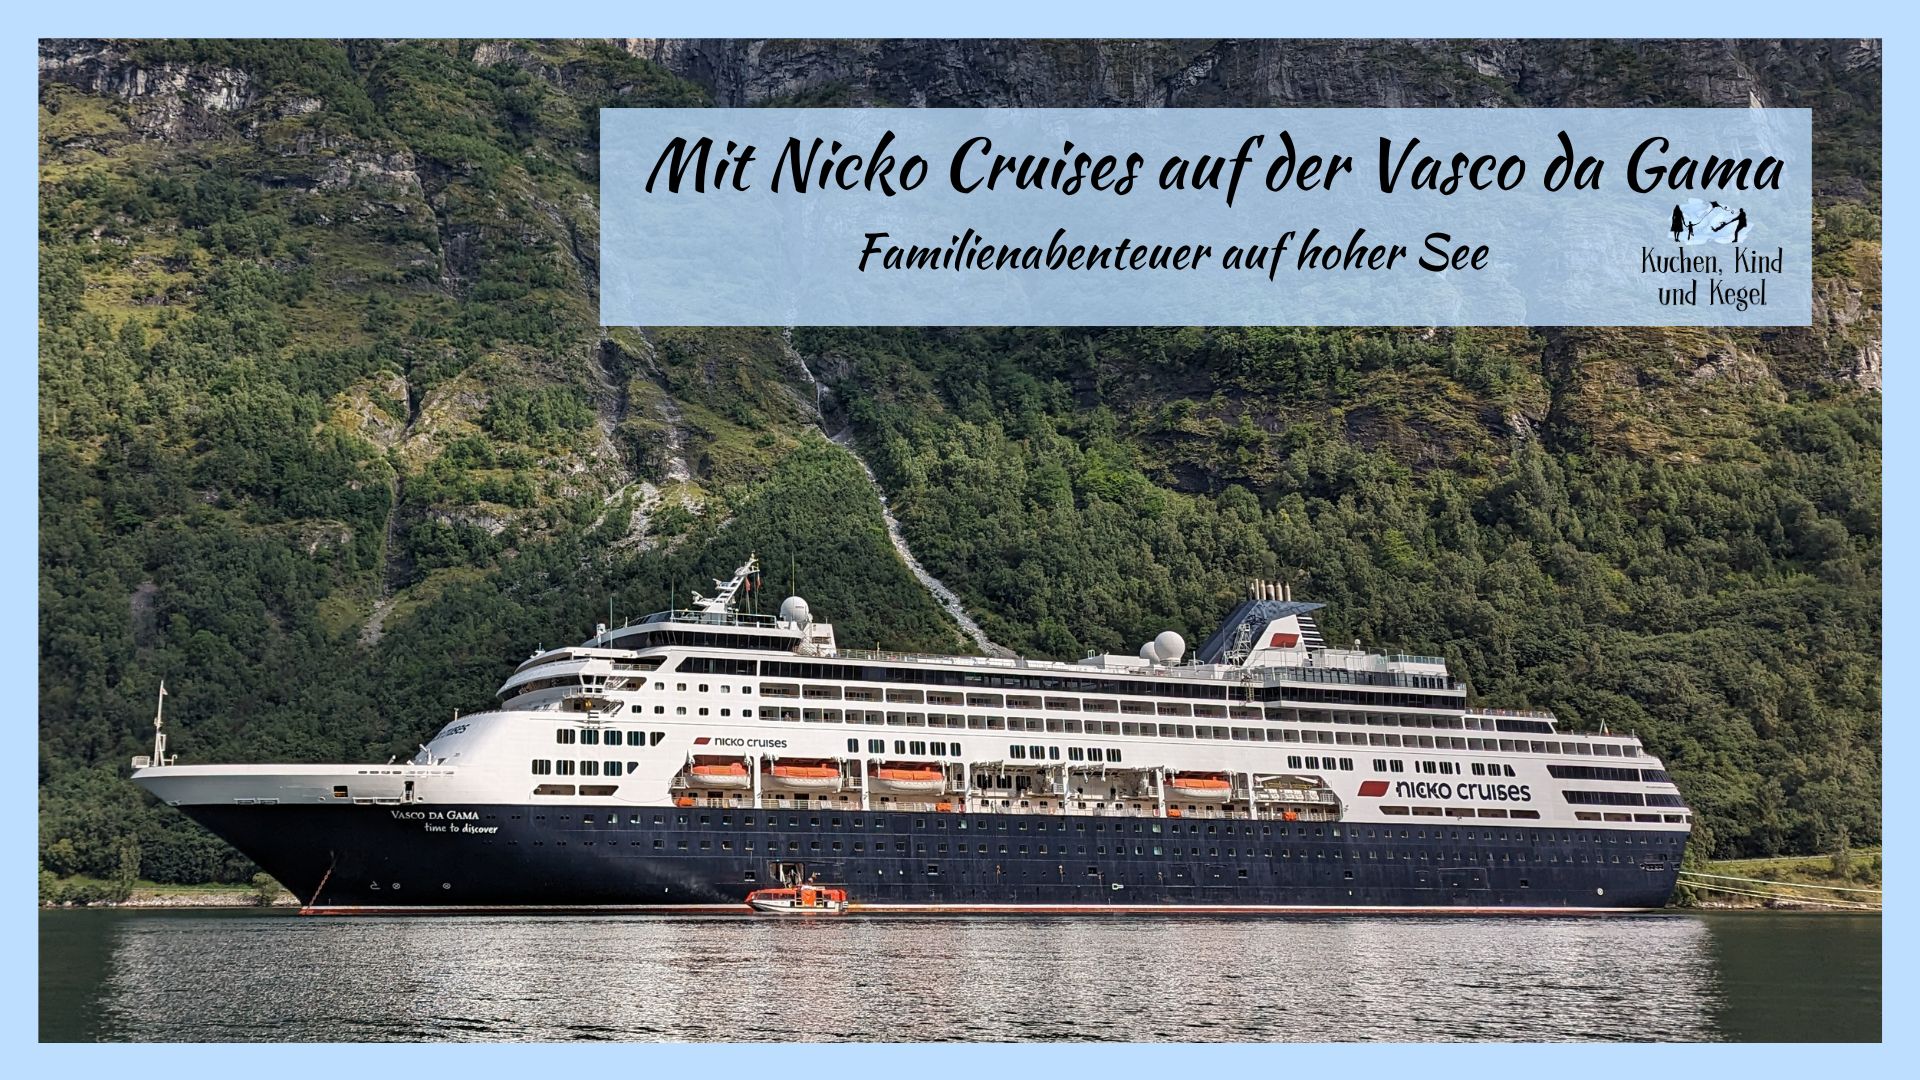 Mit Nicko Cruises auf der Vasco da Gama: Familienabenteuer auf hoher See